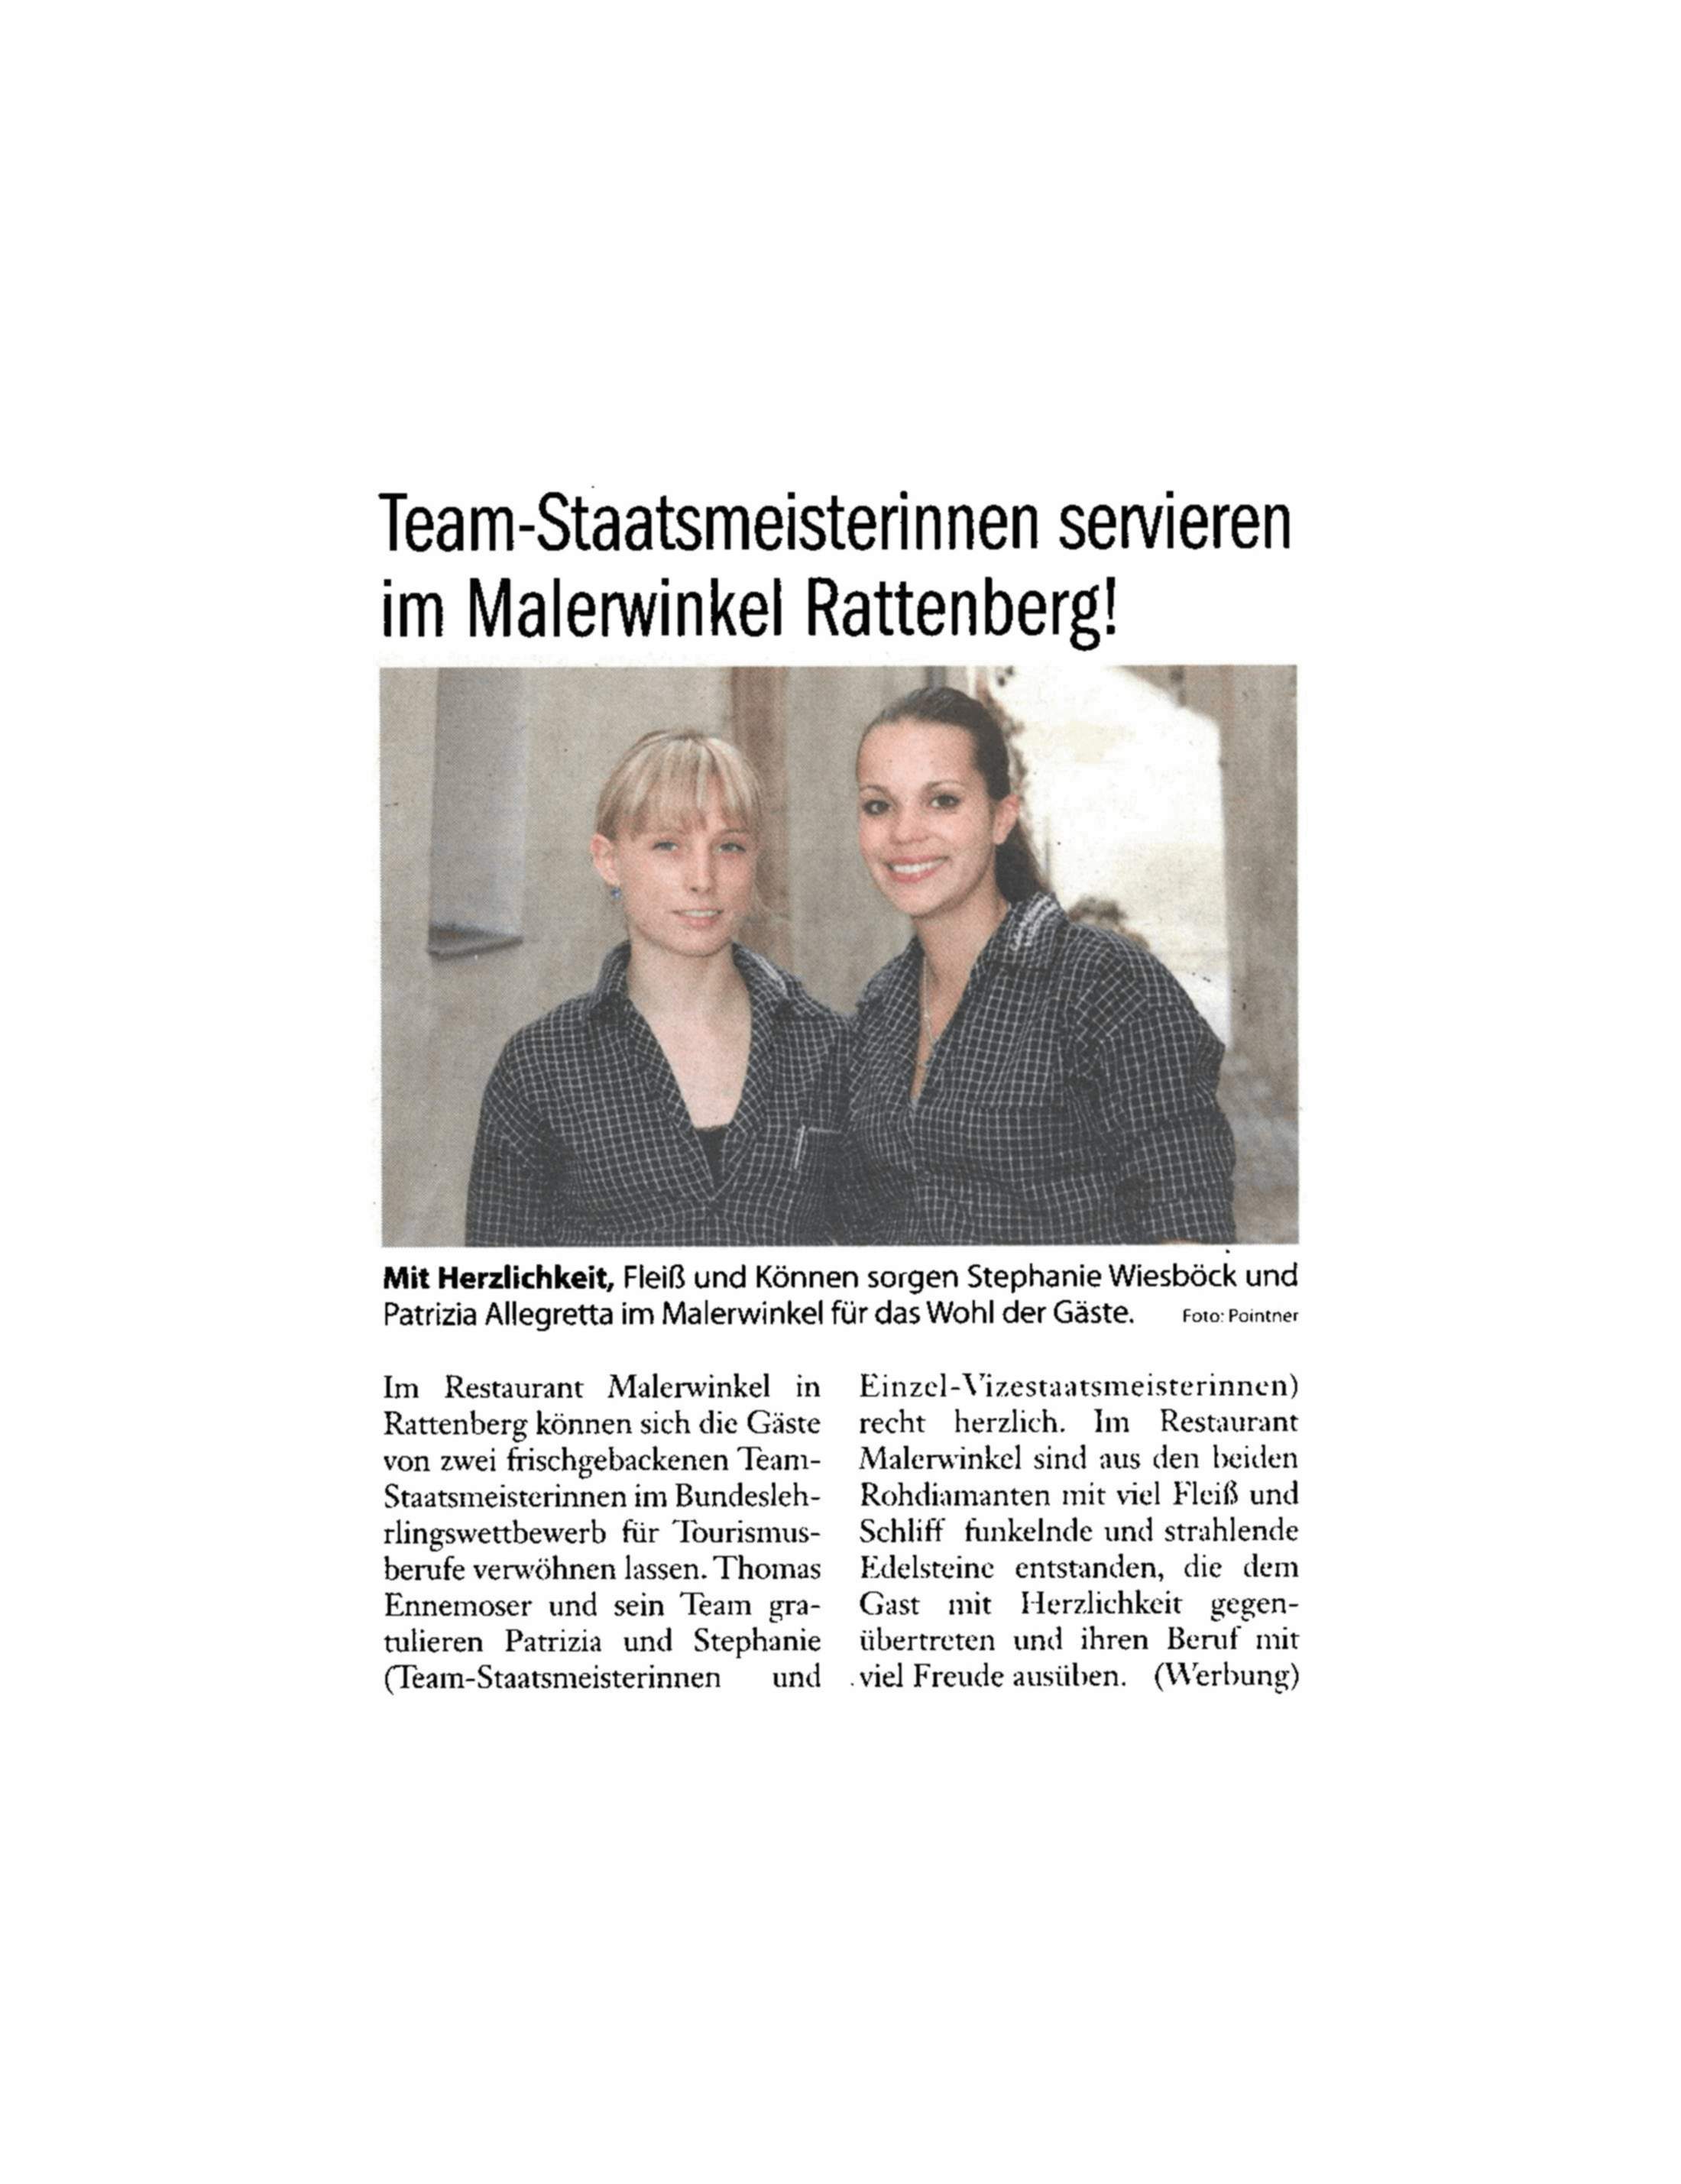 Rundschau Wörgl & Kufstein 05.04.2012 Erscheinungsland: Österreich Auflage: 48.000 Reichweite: Artikelumfang: 14.